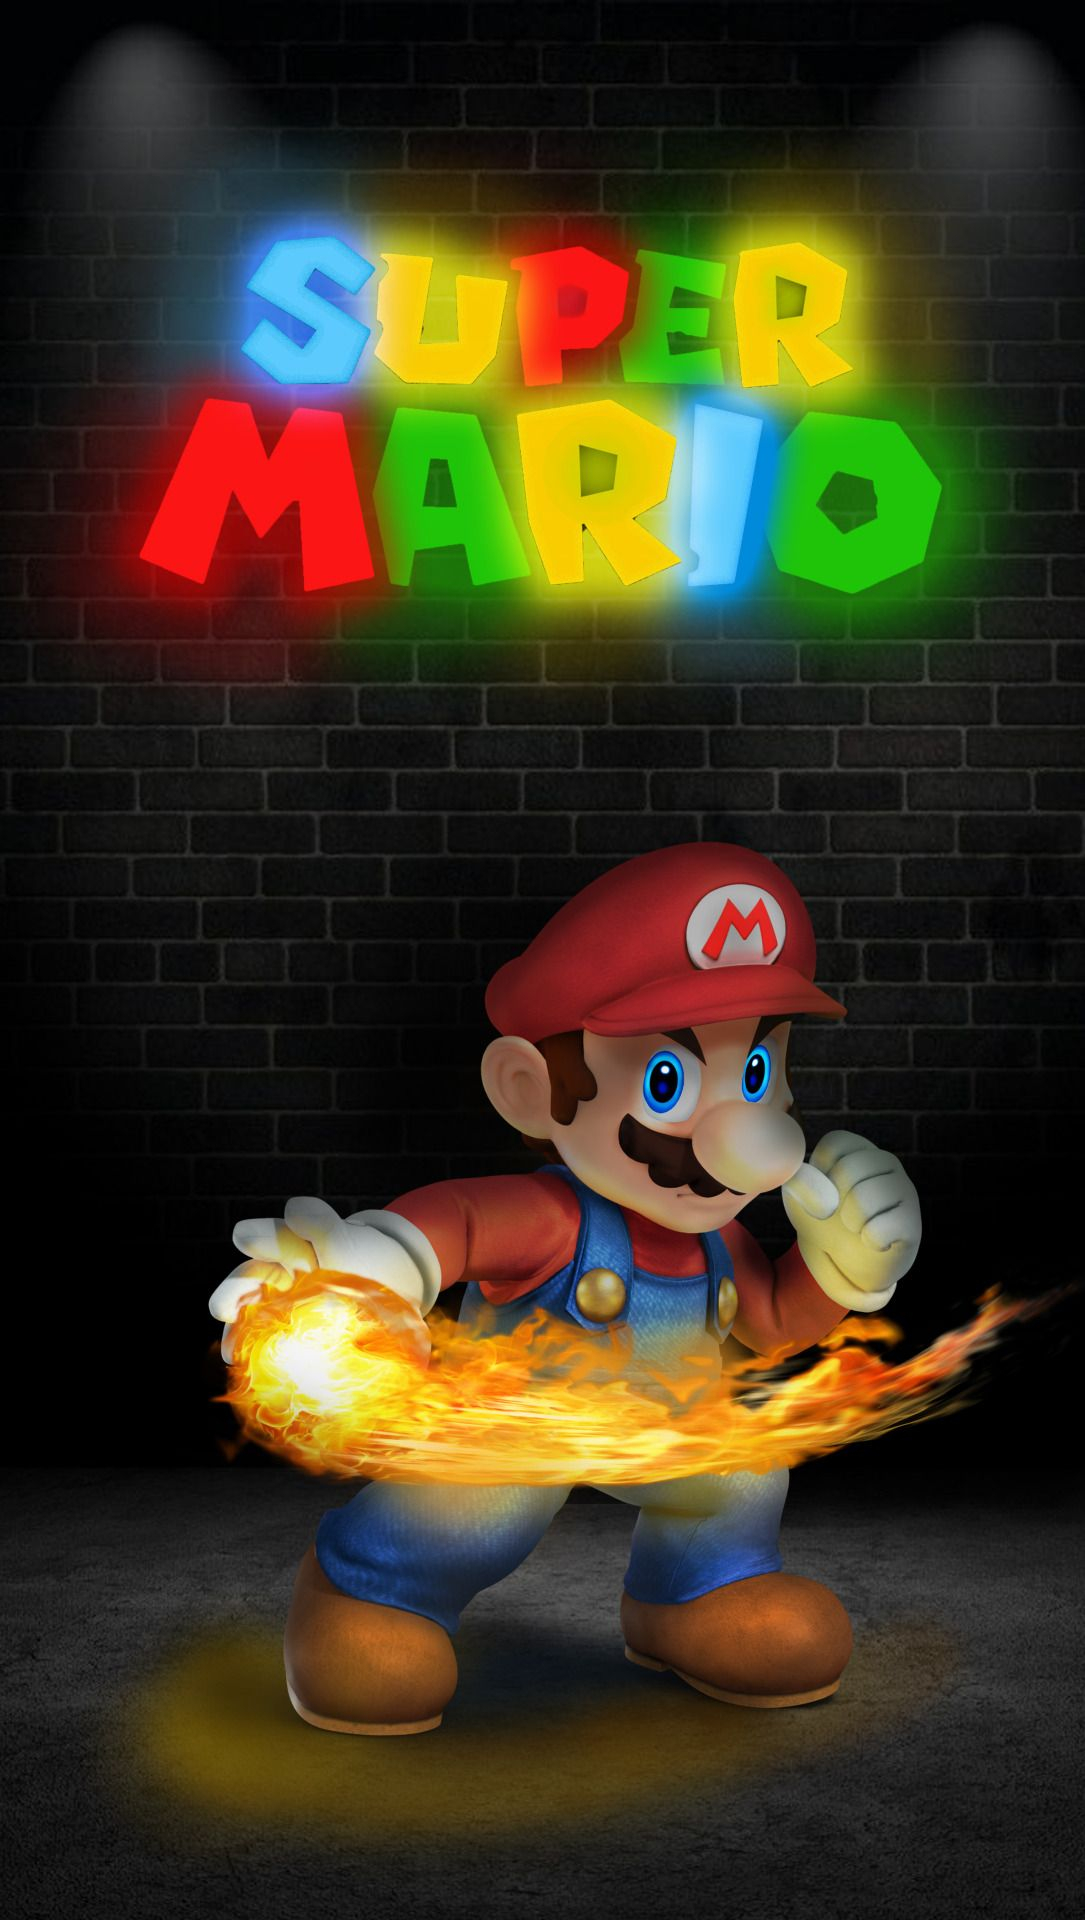 1085x1920 Super mario wallpapers | Super mario art, Super mario, Mario bros